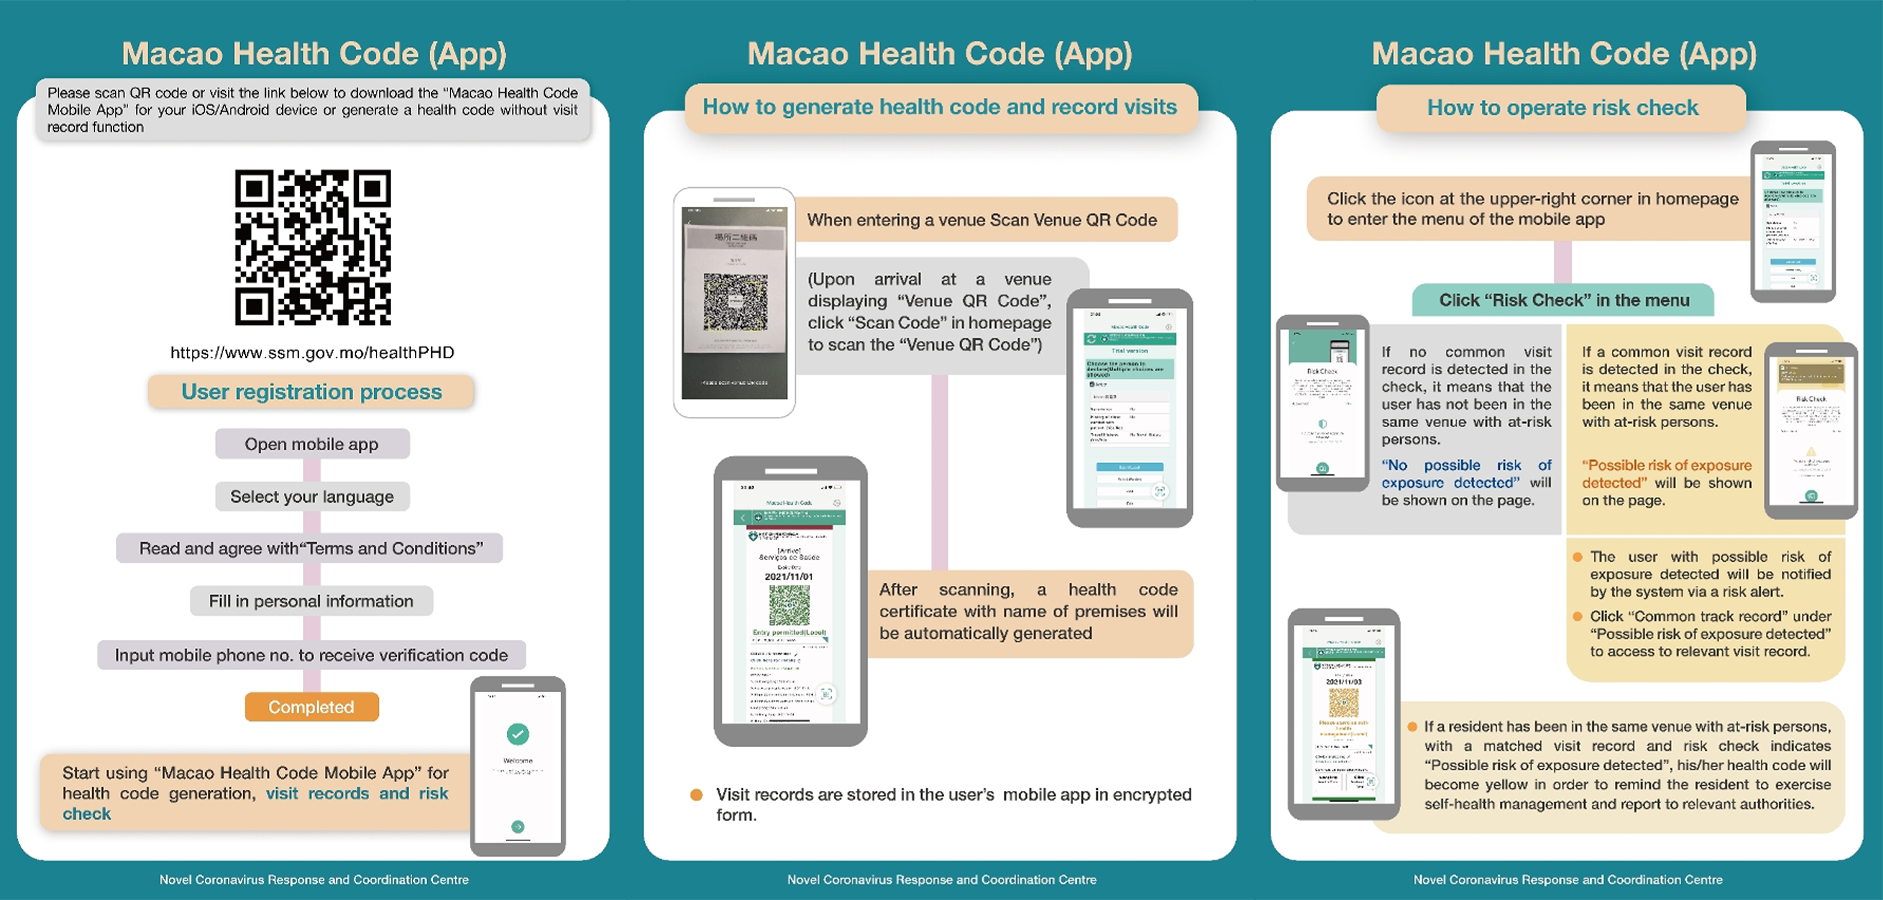 Macao Health Code app